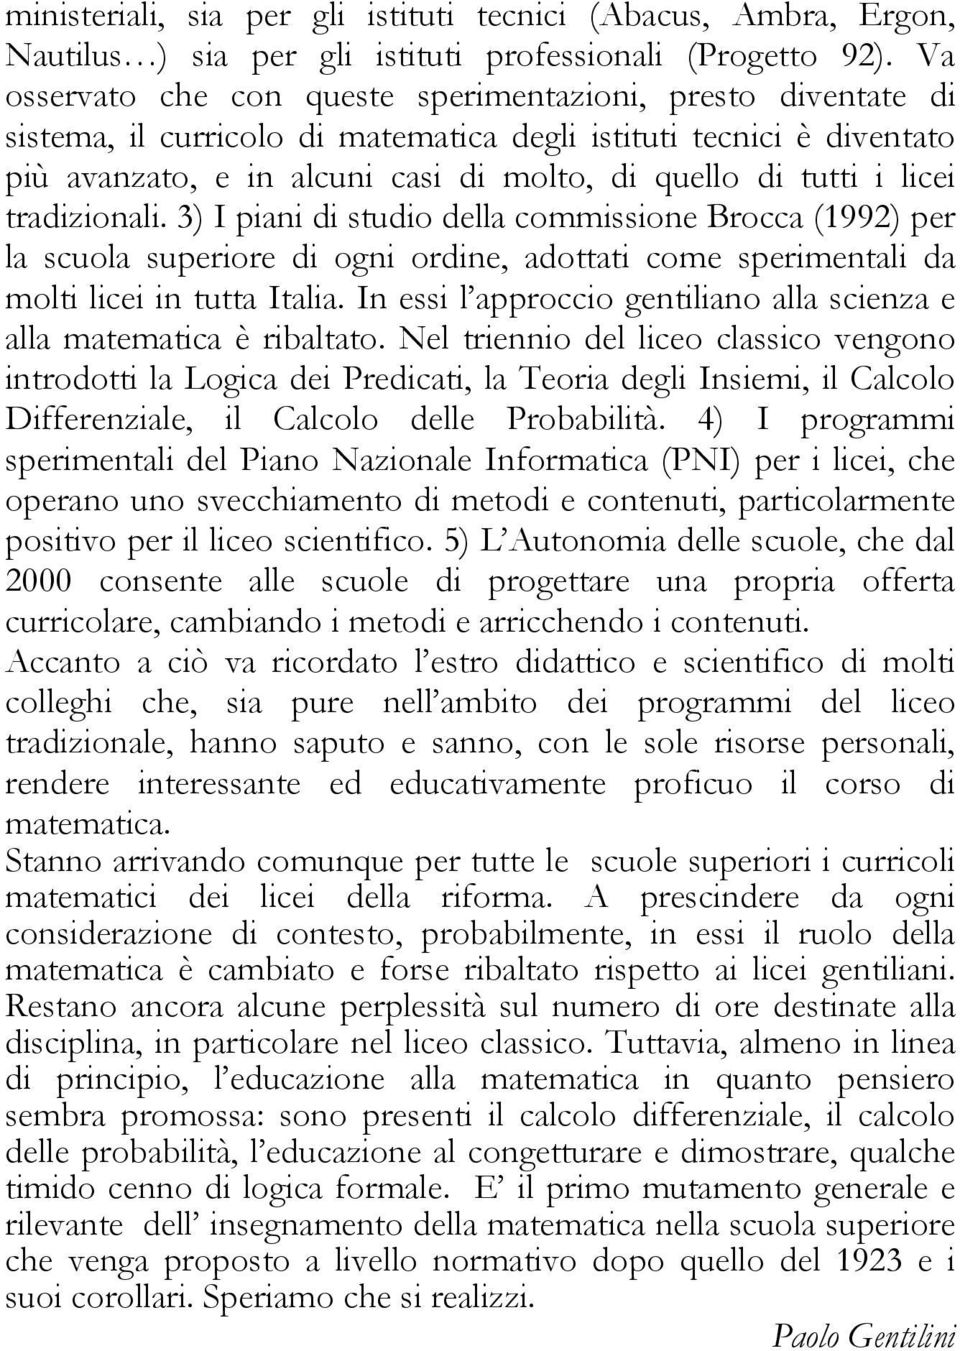 licei tradizionali. 3) I piani di studio della commissione Brocca (1992) per la scuola superiore di ogni ordine, adottati come sperimentali da molti licei in tutta Italia.